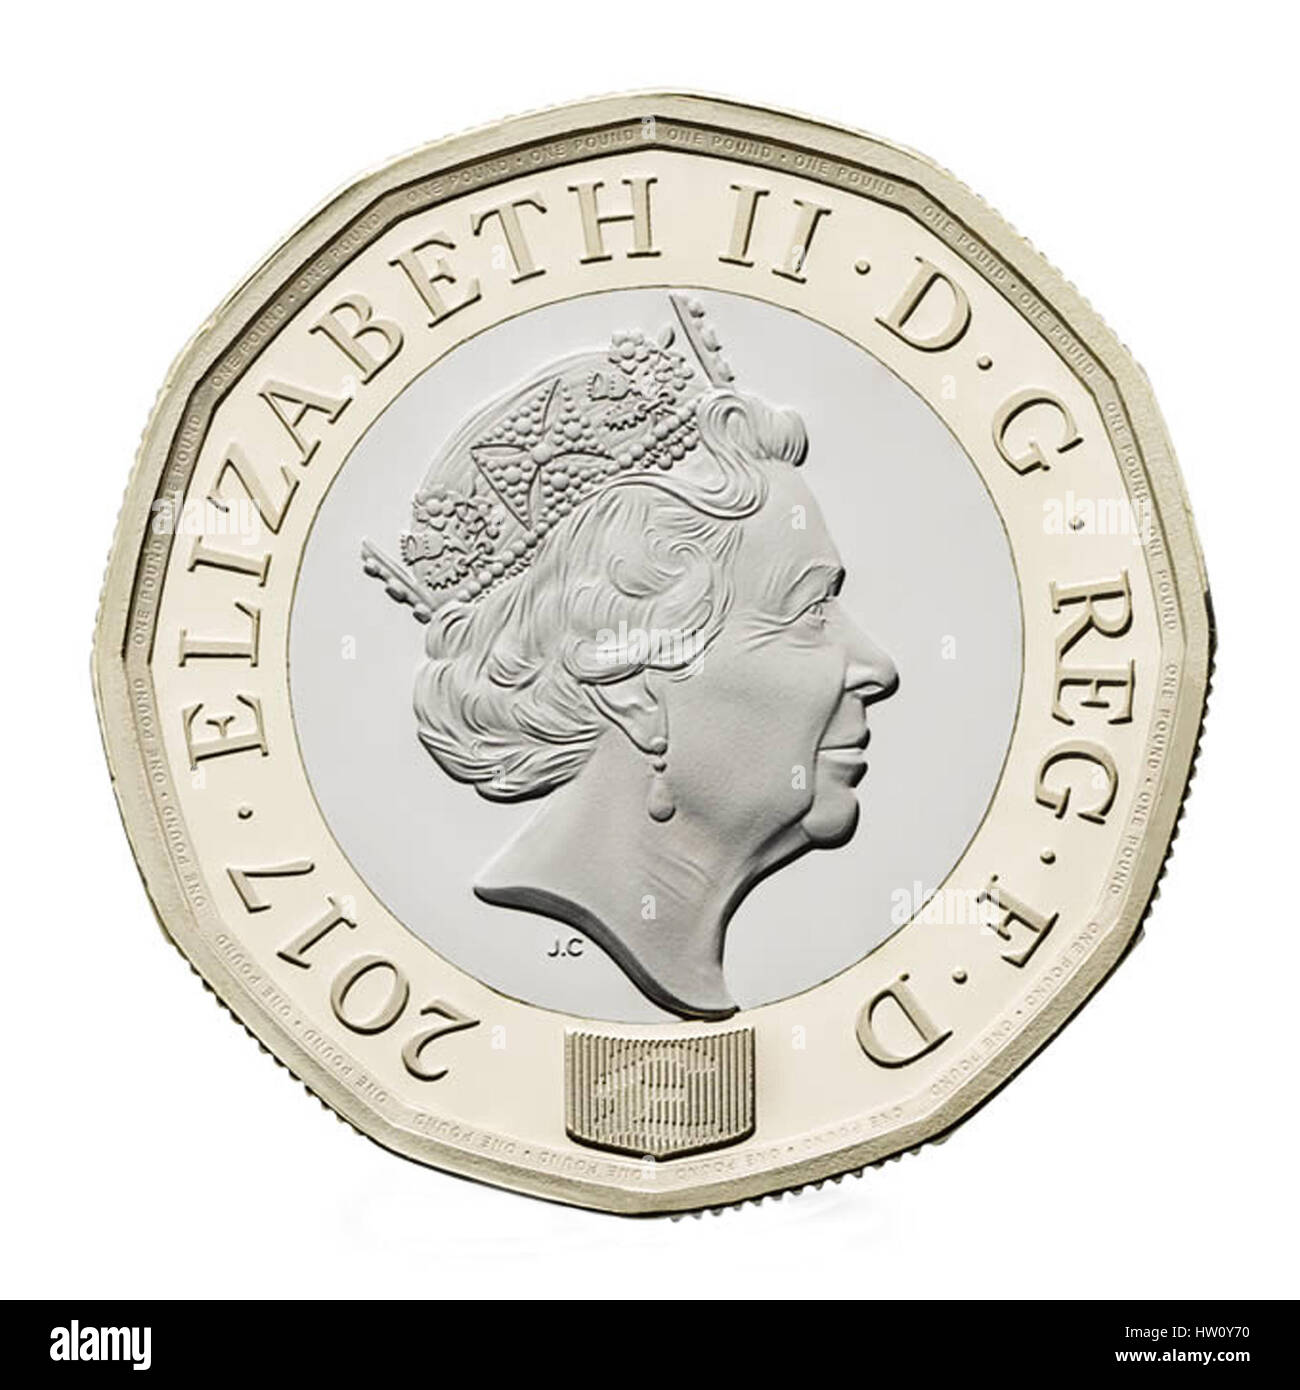 2017 sterlina inglese moneta isolato su sfondo bianco. Il nuovo Regno Unito  £ 1 moneta entrerà